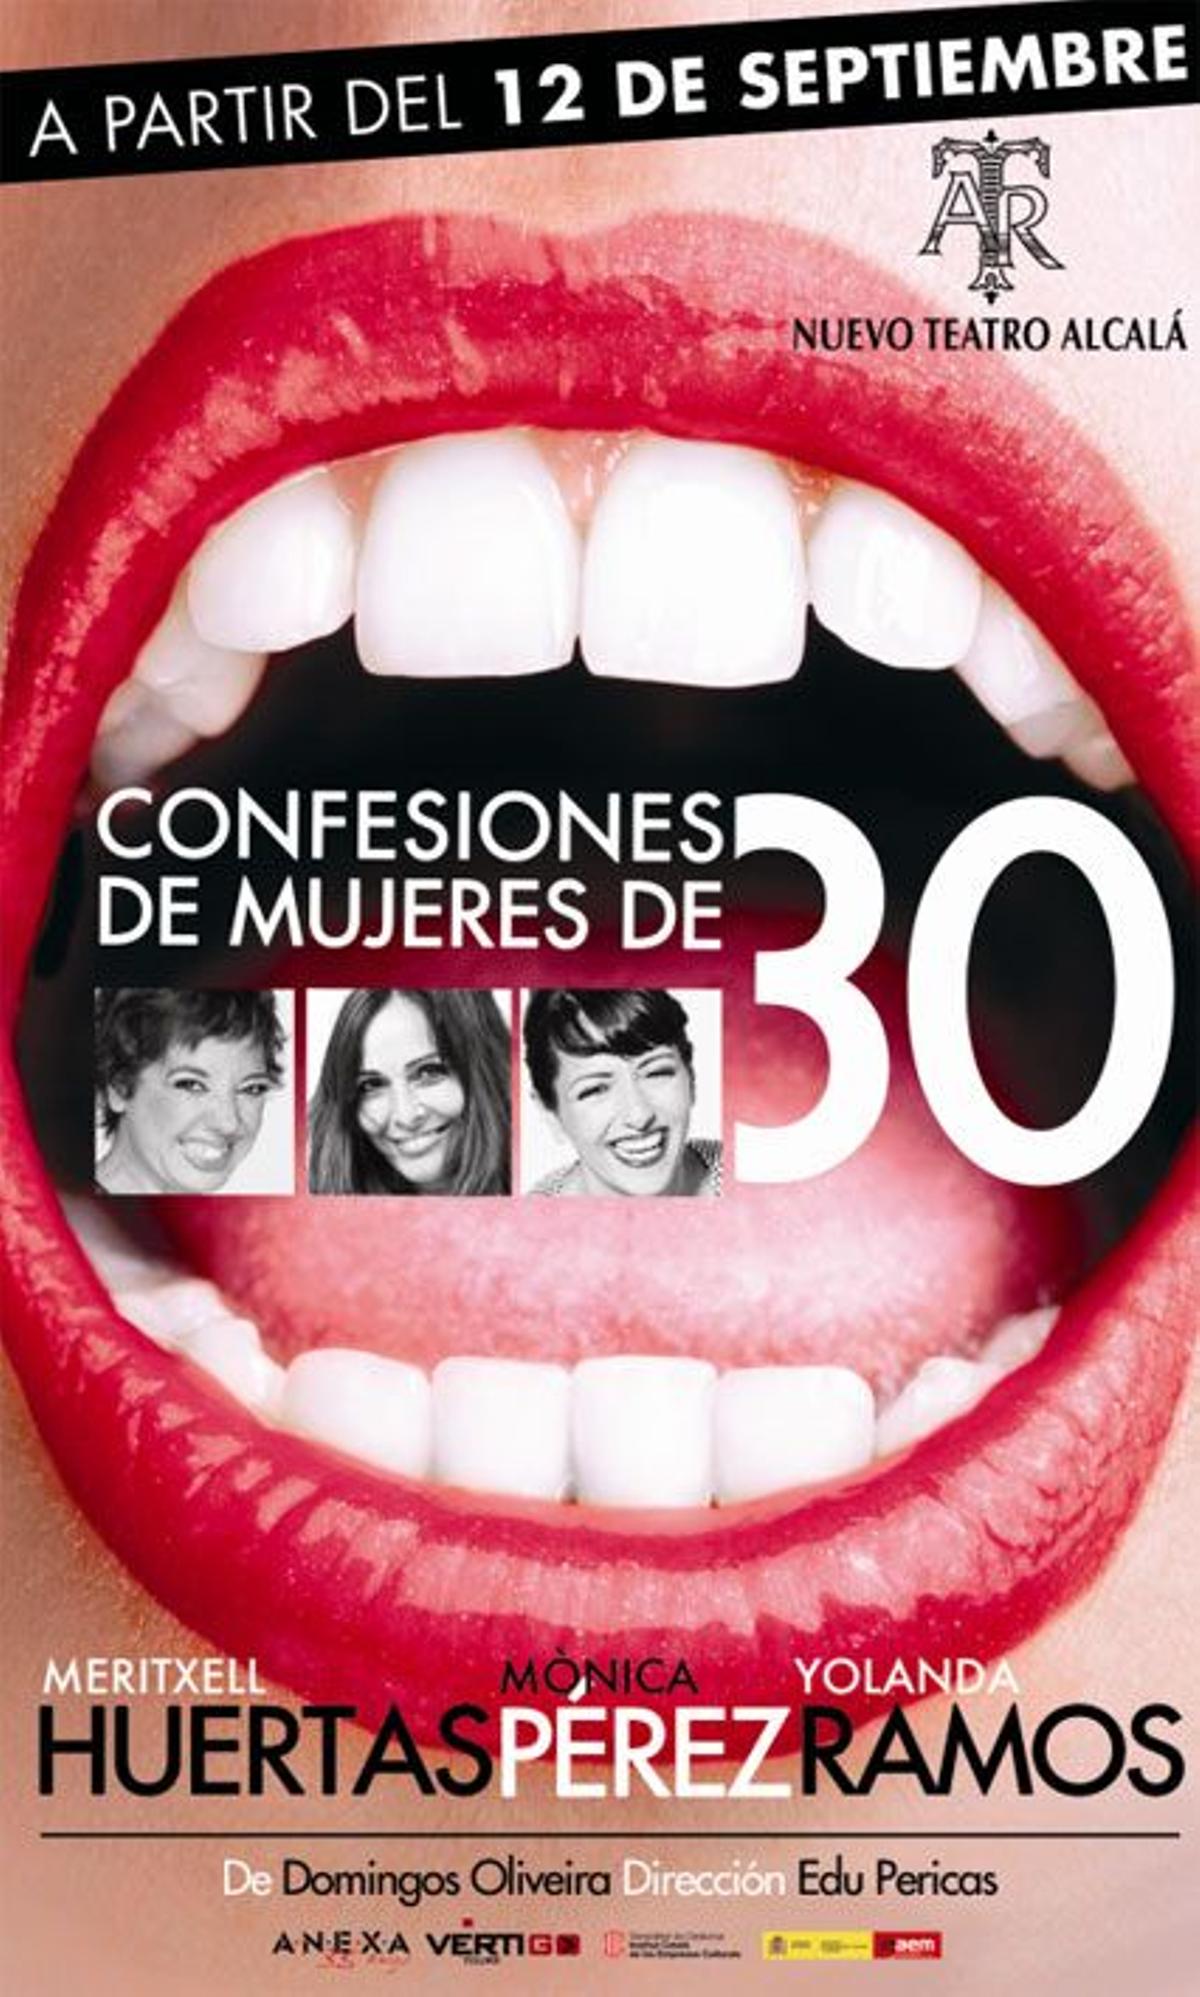 Dones com jo, teatro, Barcelona, Confesiones de mujeres de 30, Madrid, agenda, planes